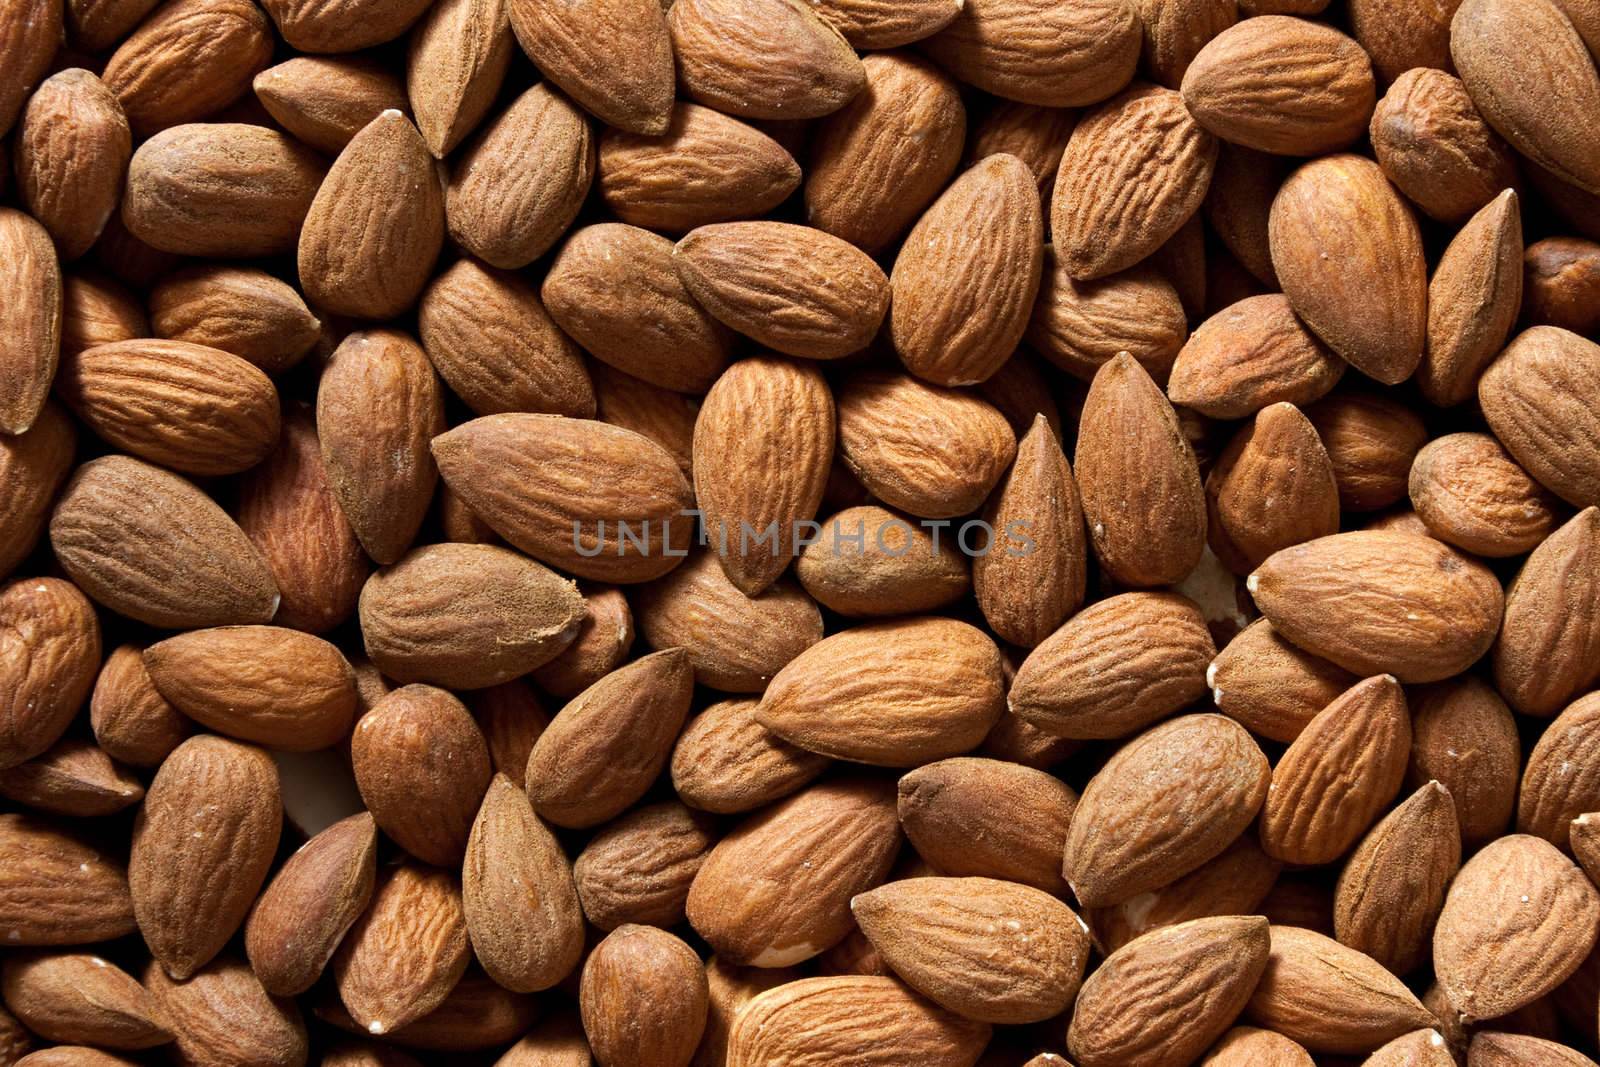 Raw almonds by raliand